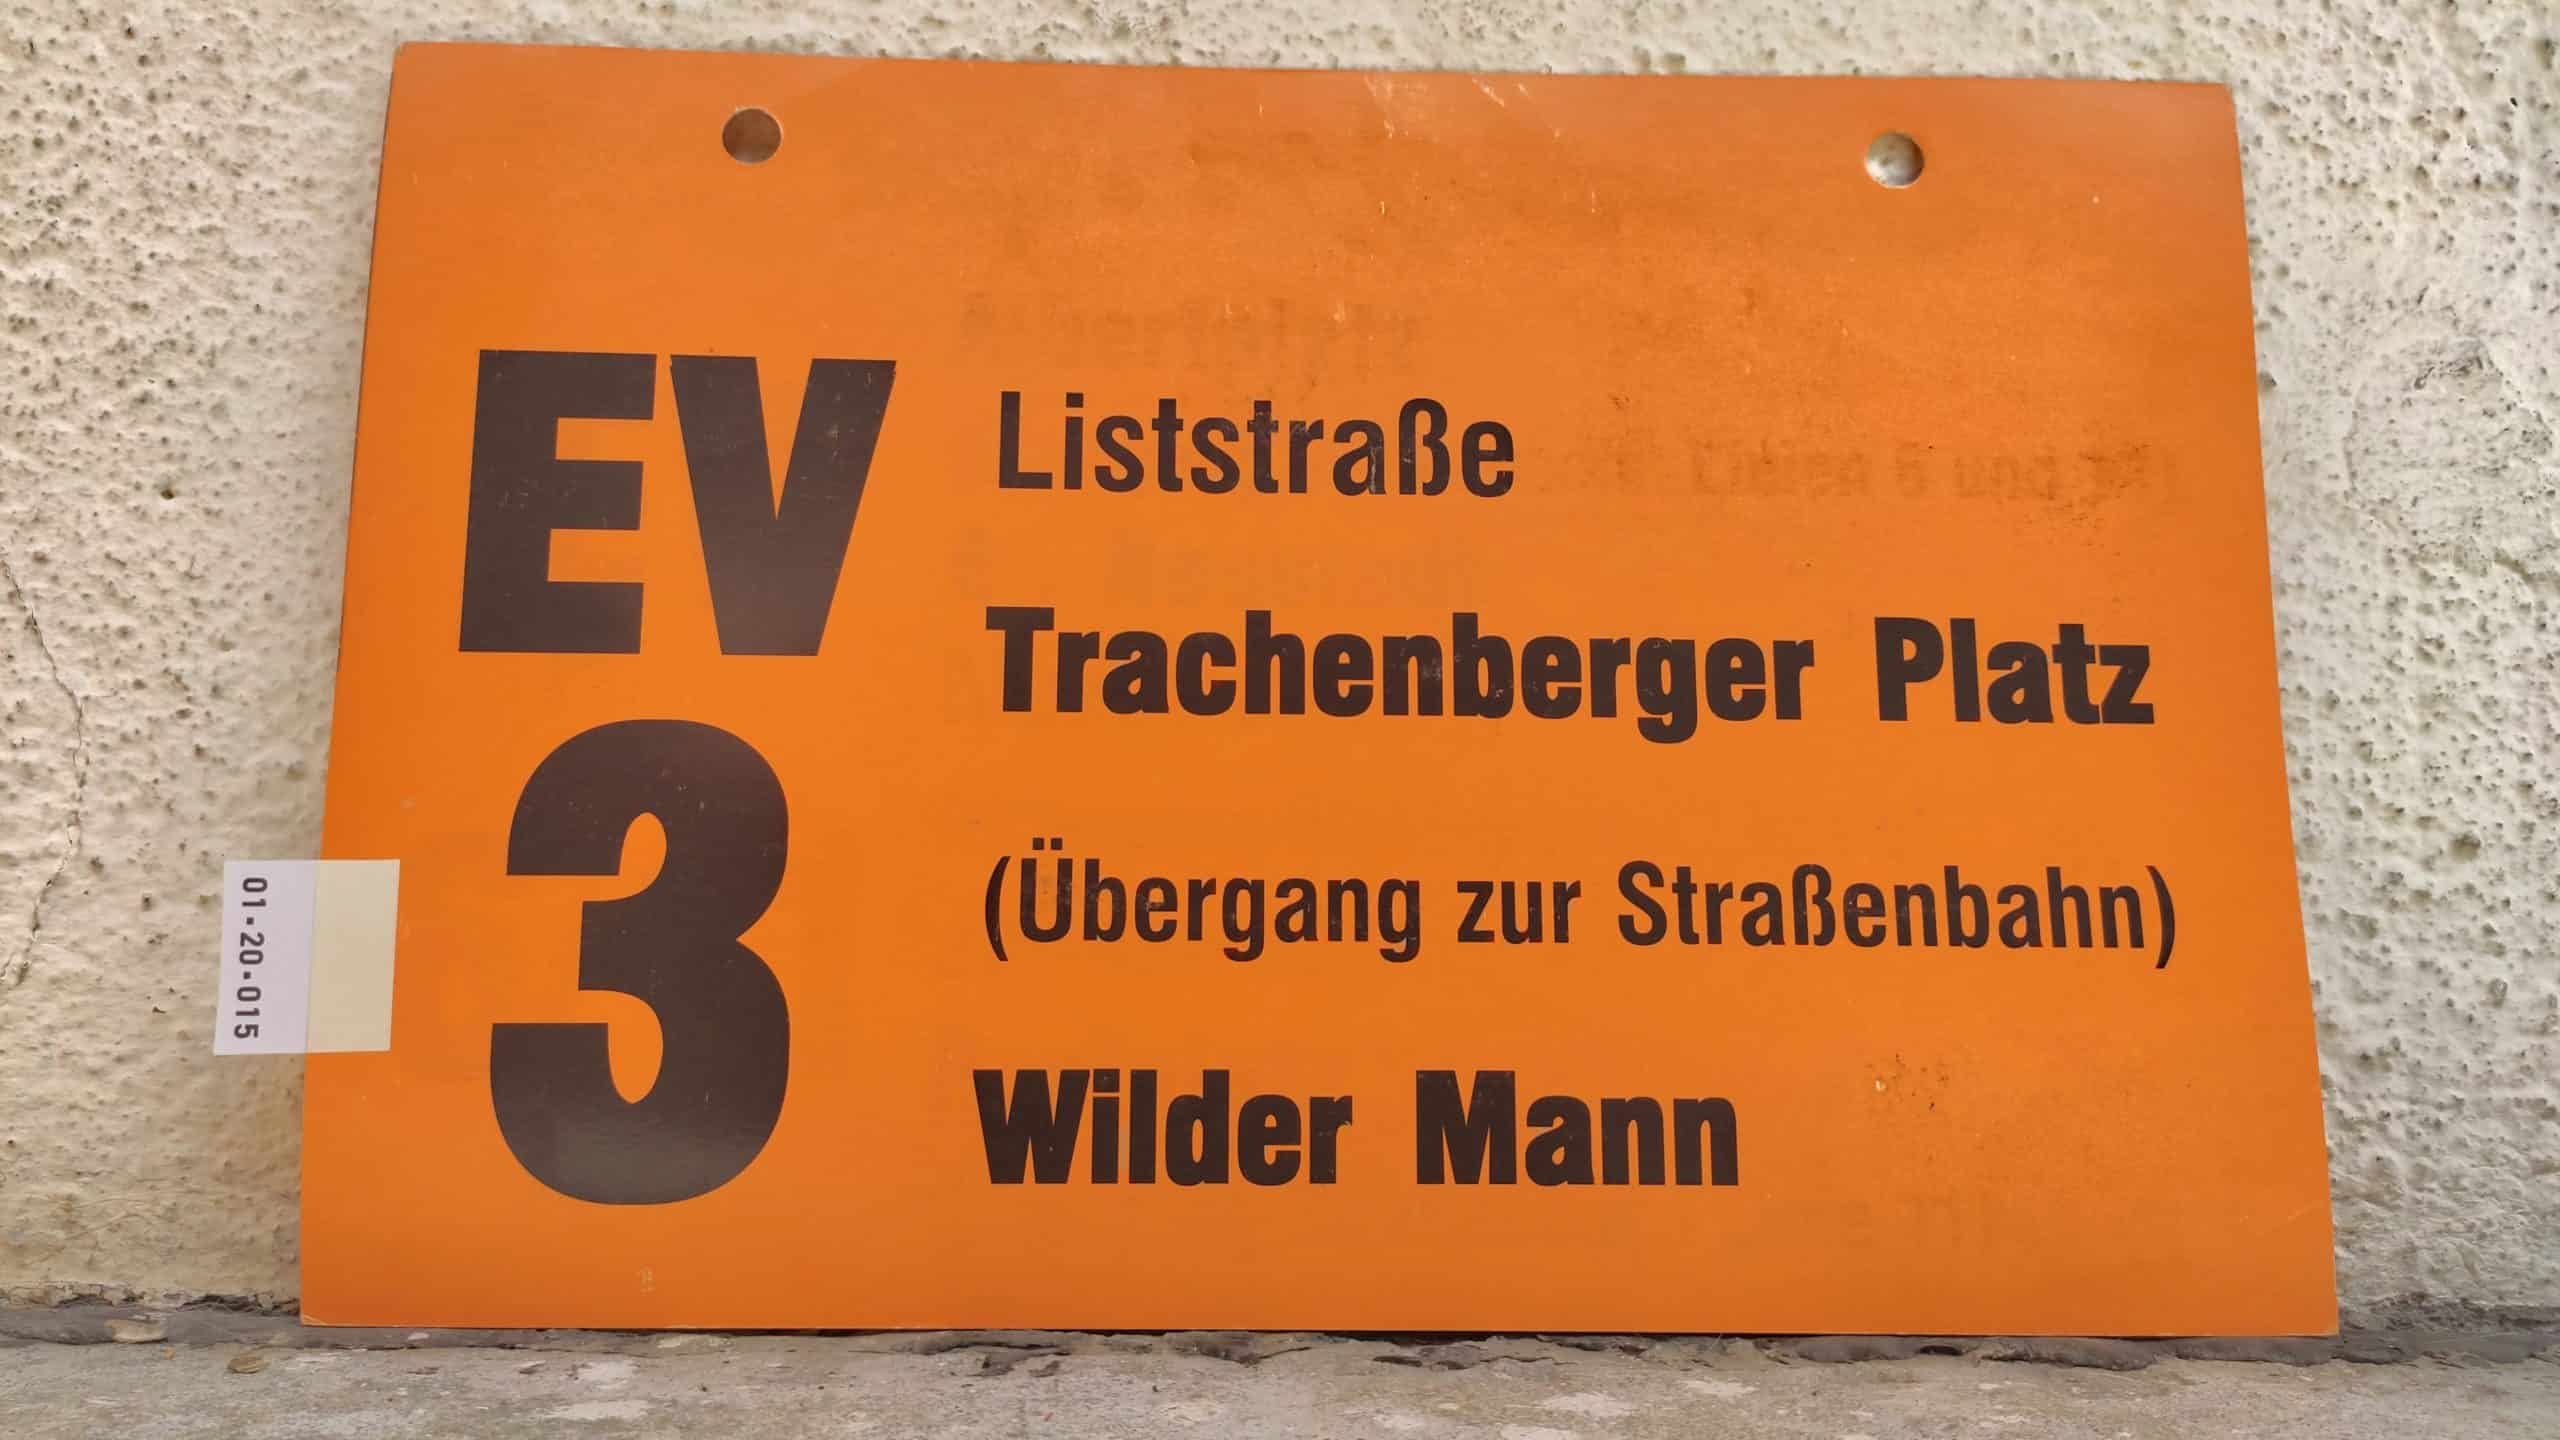 EV 3 Liststraße – Wilder Mann